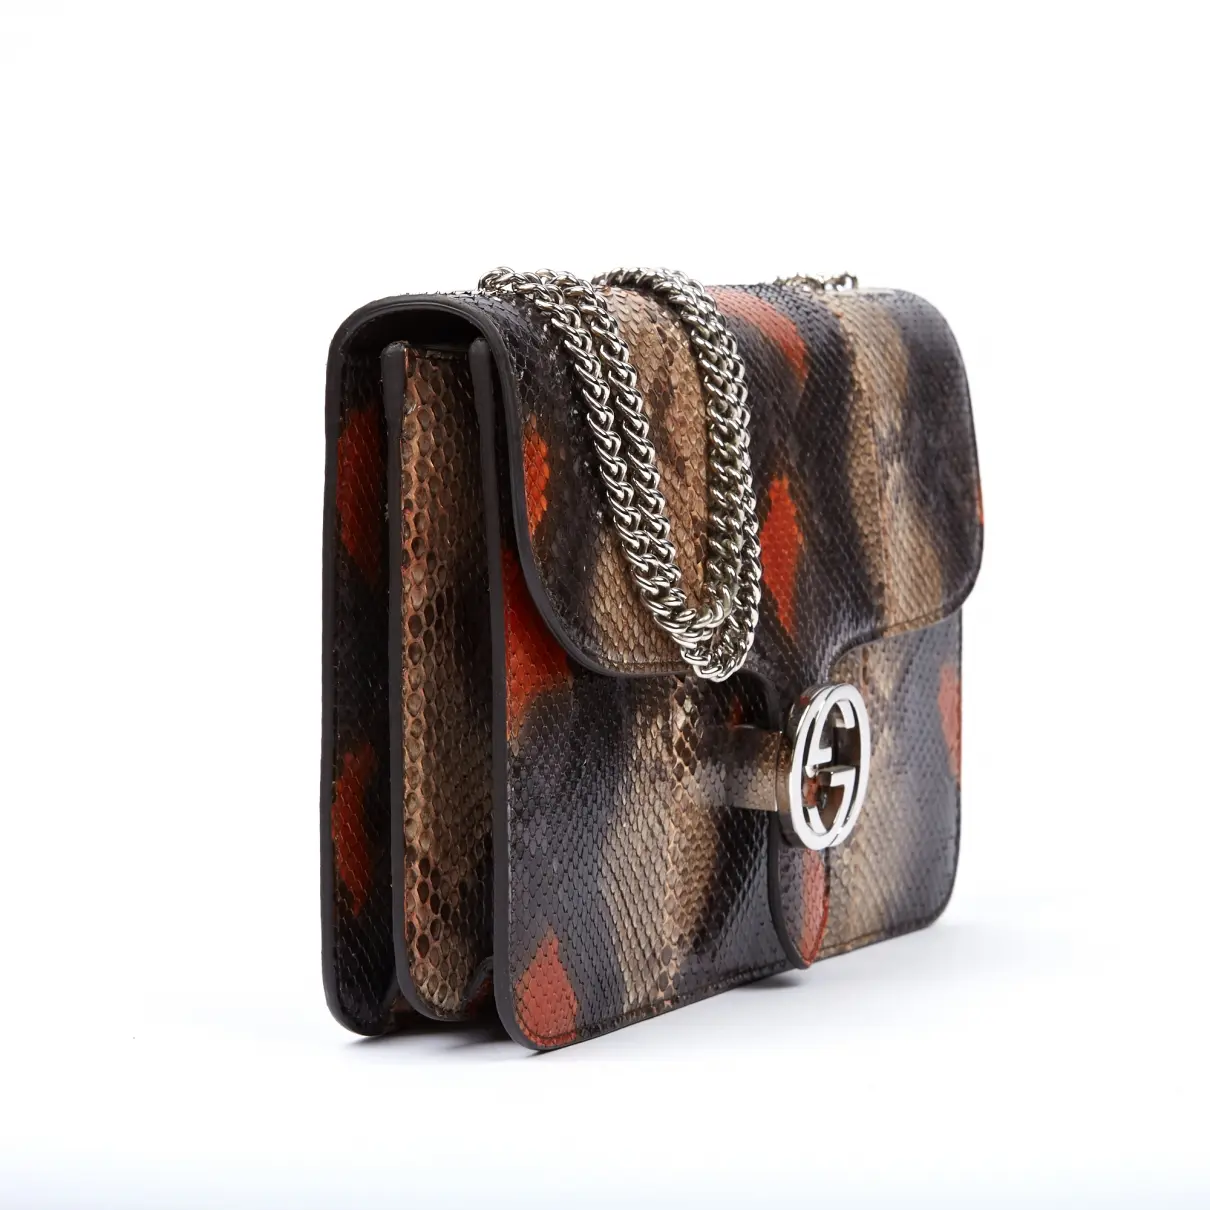 Gucci 1973 python handbag for sale